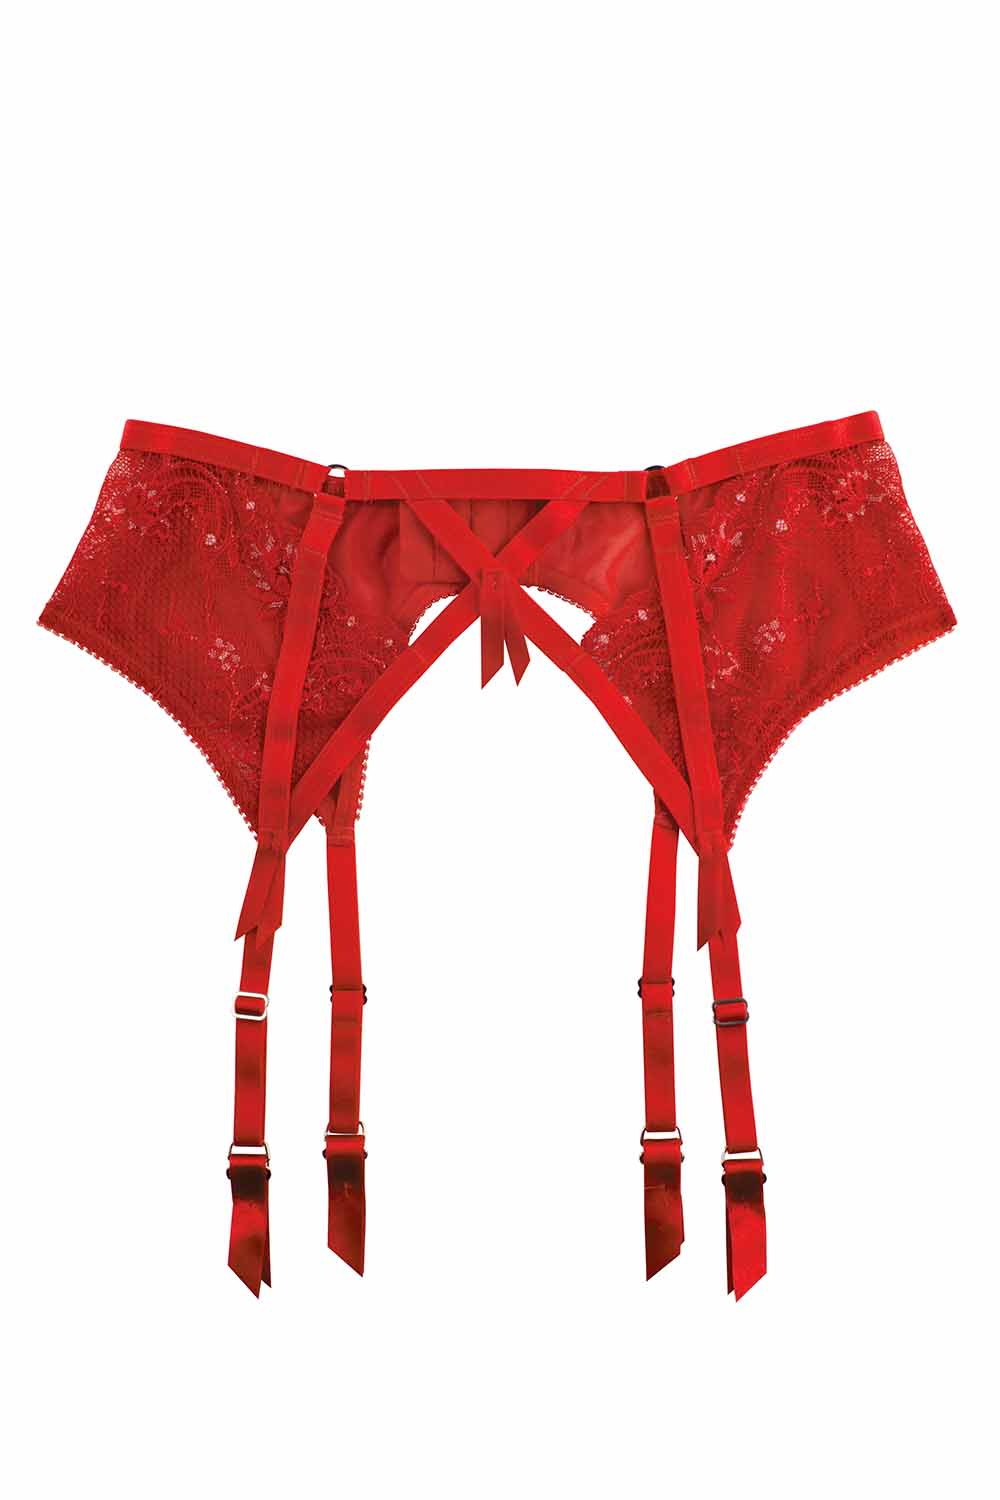 Madame X Red Suspender